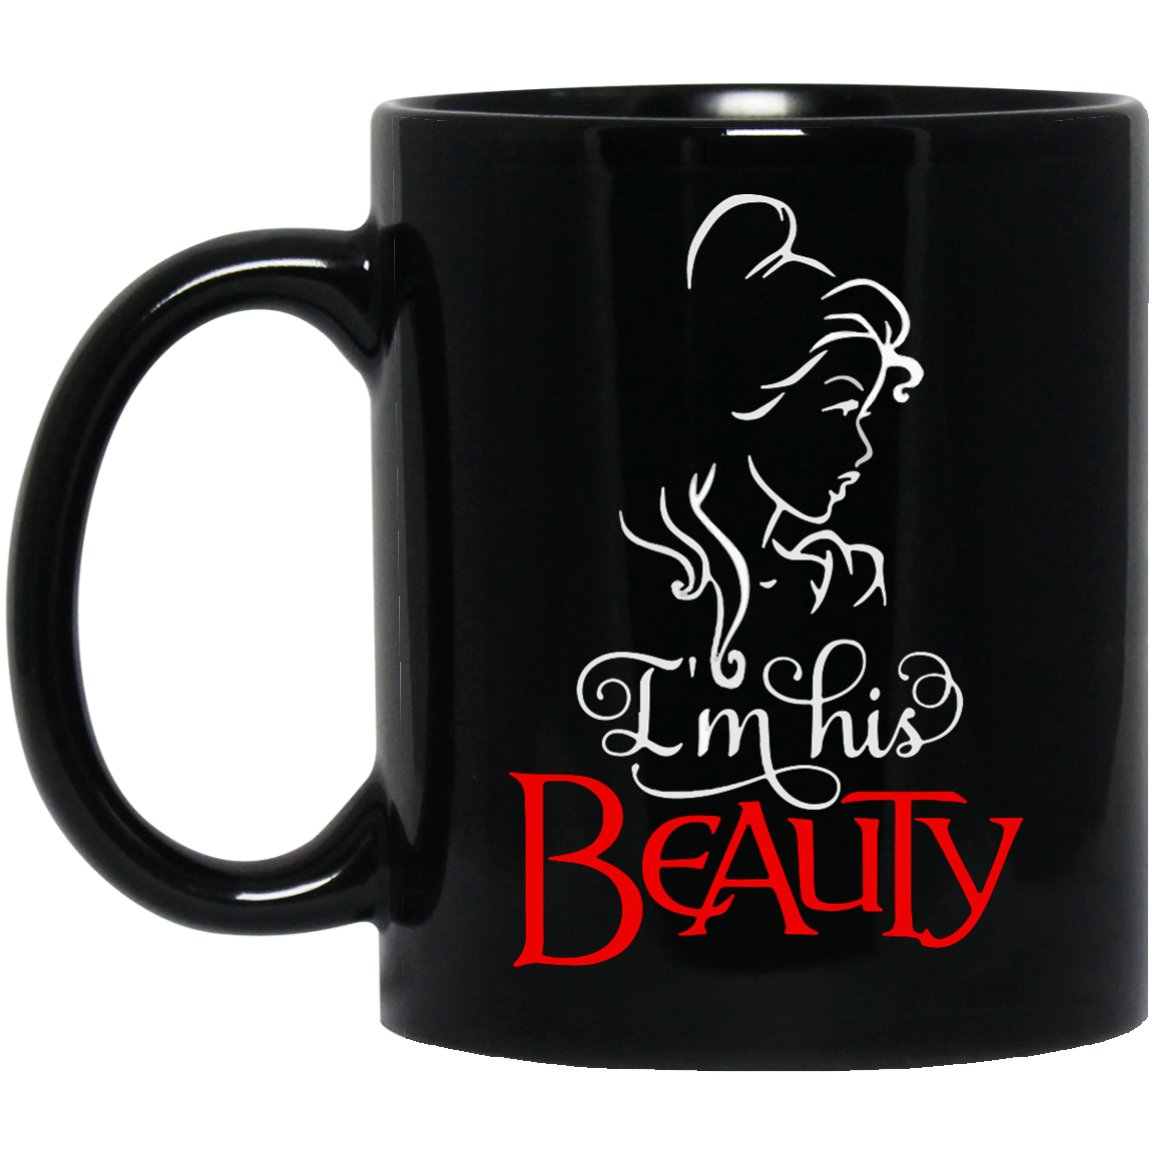 Beauty and the Beast: I'm his Beauty mugs